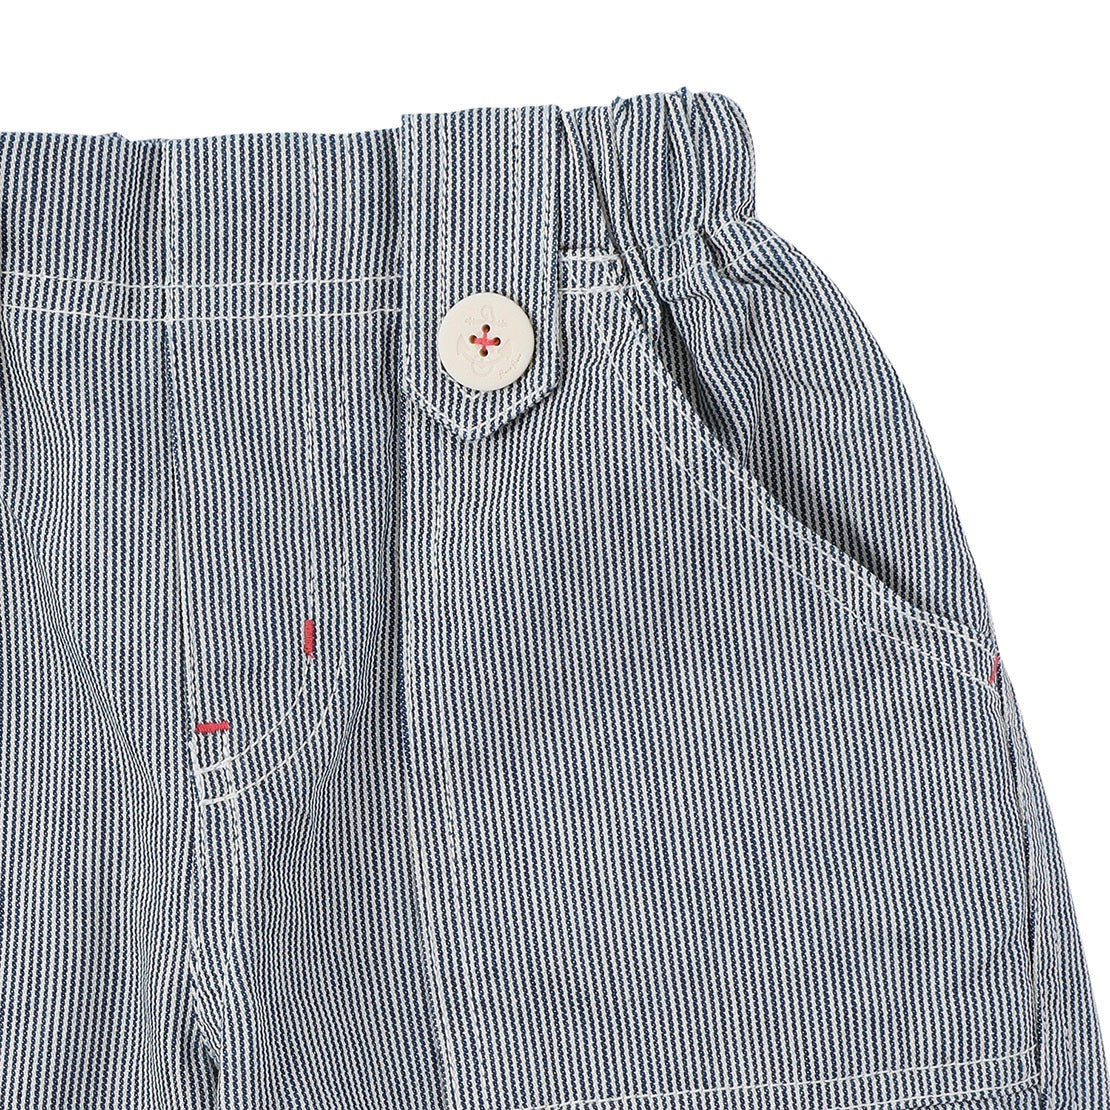 MARINE Stripe Button Shorts Navy